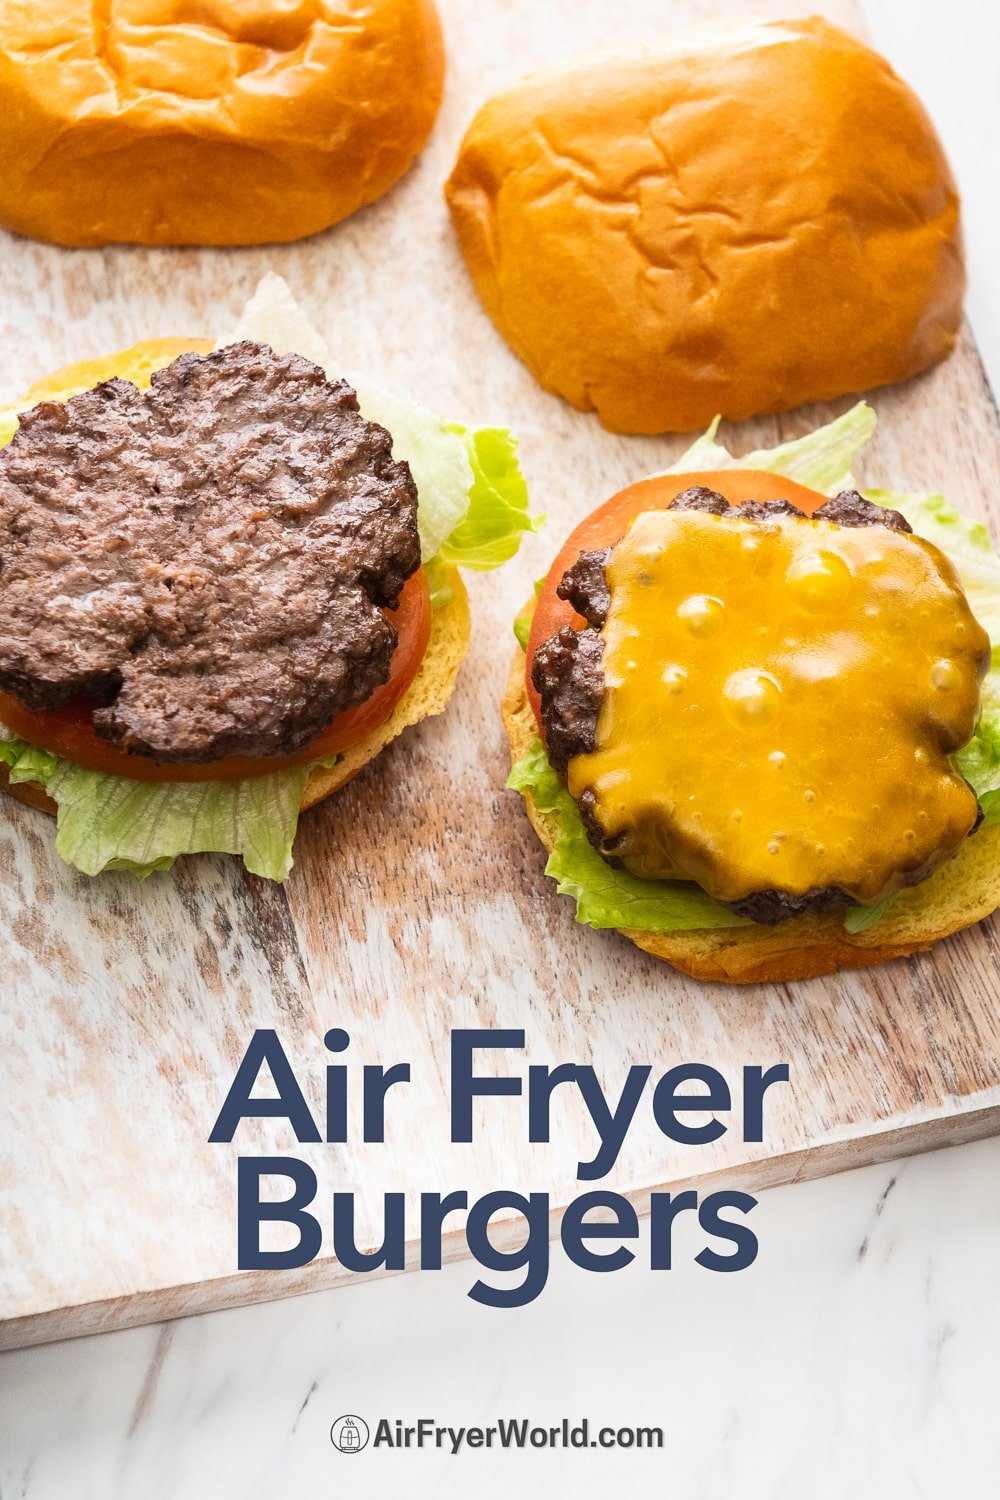 https://airfryerworld.com/images/Air-Fryer-Homemade-Burgers-AirFryerWorld-2.jpg